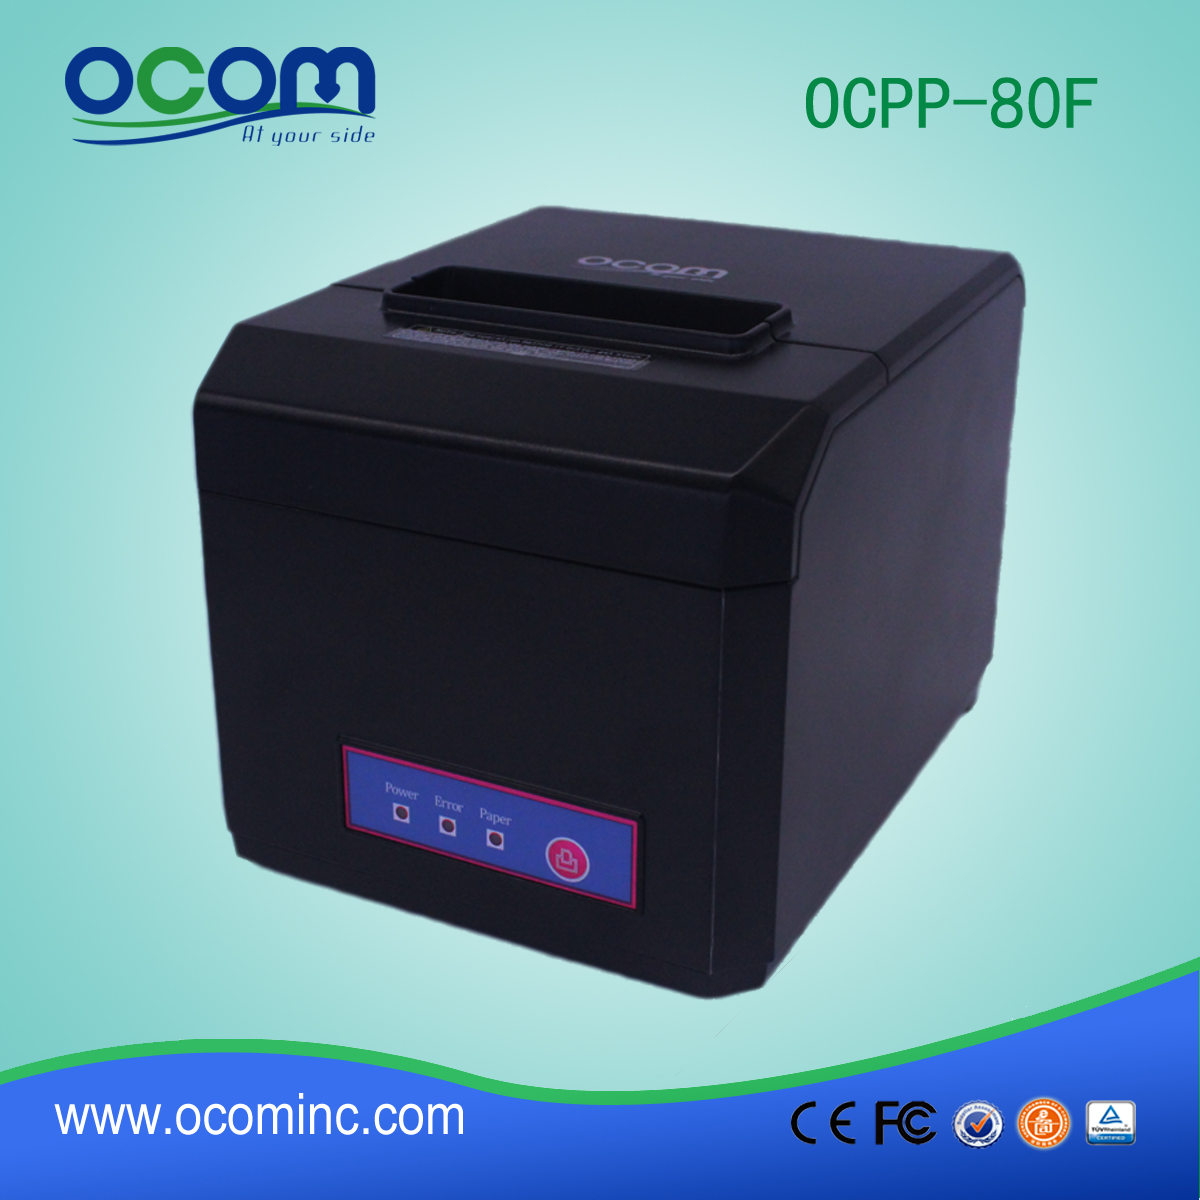 OCPP-80F: Chine Wireless Bluetooth et WiFi POS imprimante de réception thermique